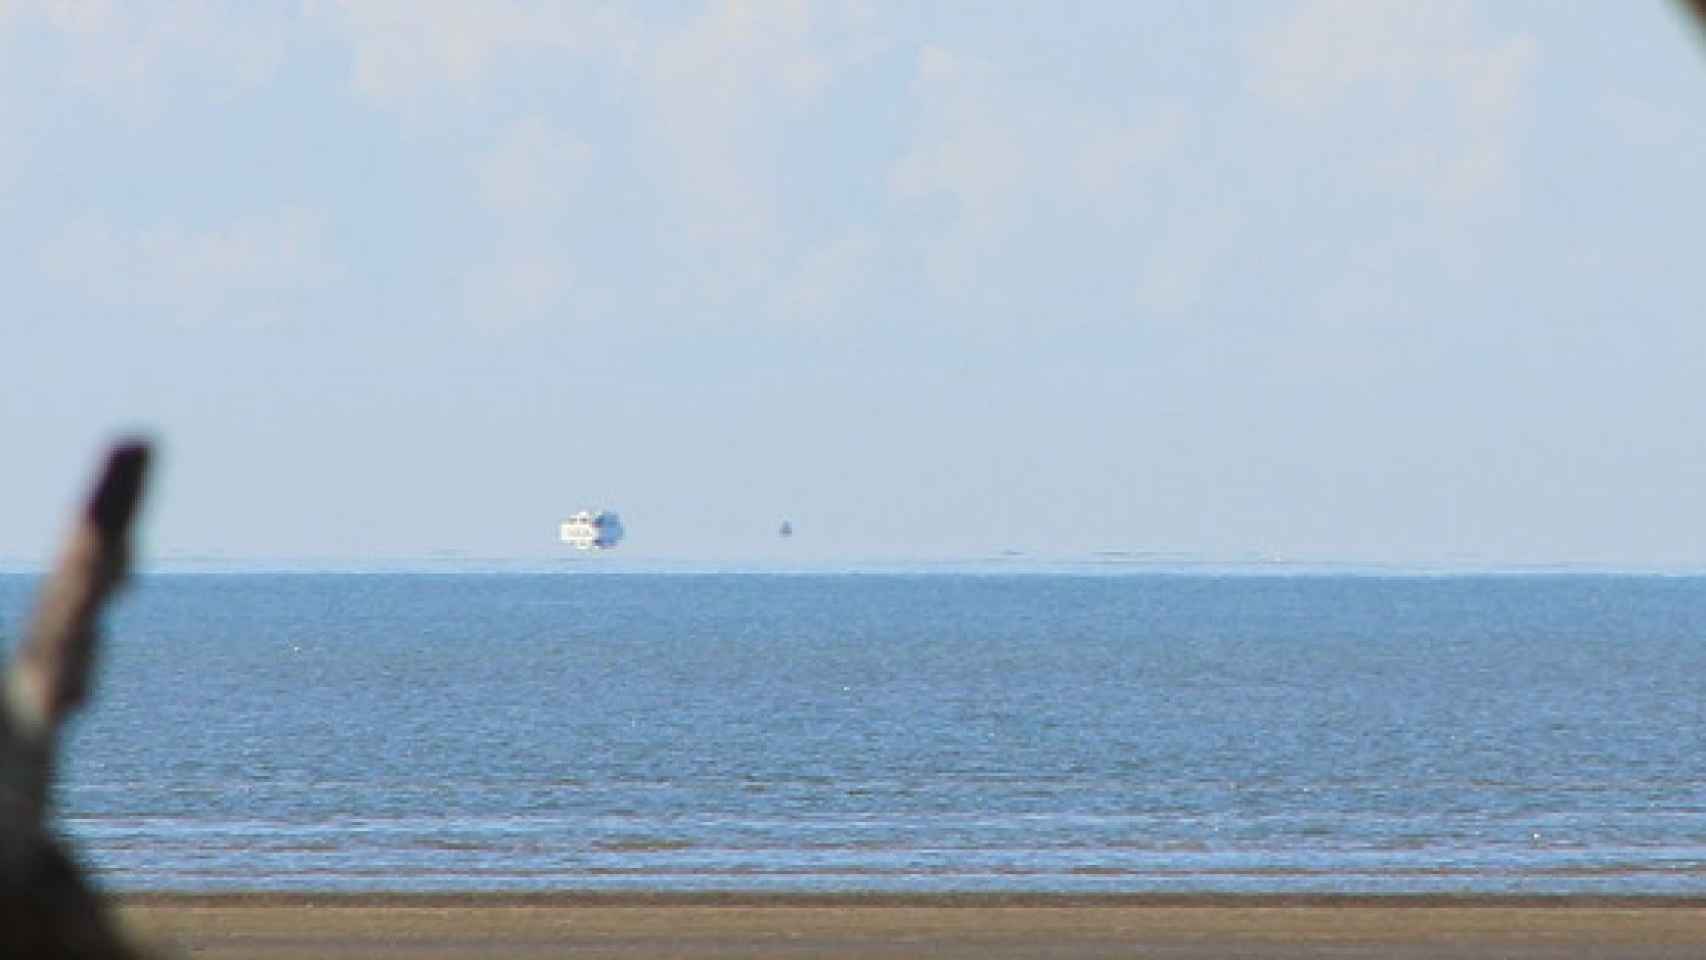 Fata Morgana. Un ejemplo de imagen que muestra un barco que parece estar flotando sobre el horizonte.